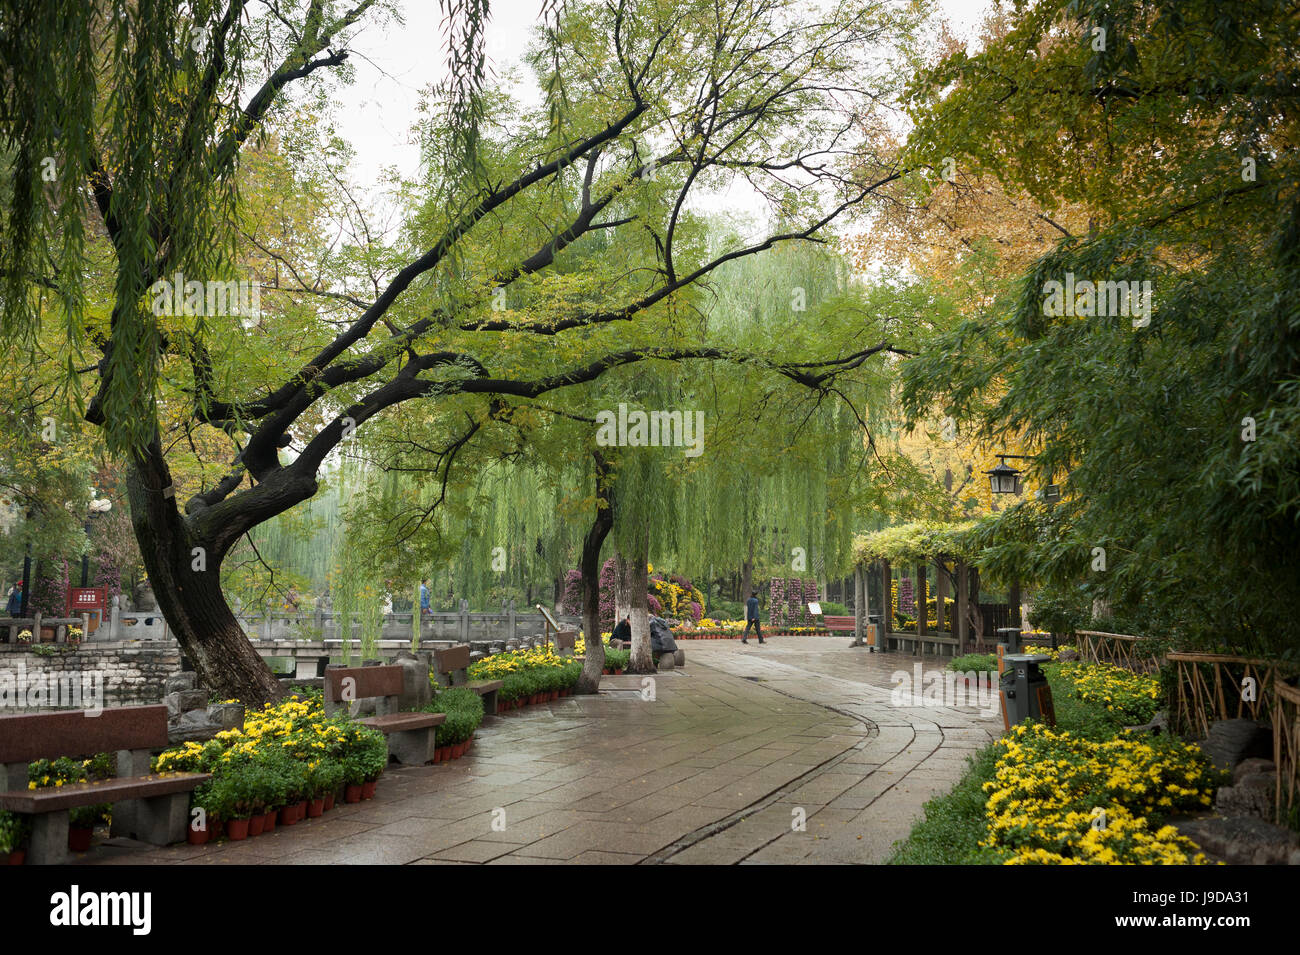 Baotu Spring Park, Jinan, Shandong province, China, Asia Stock Photo